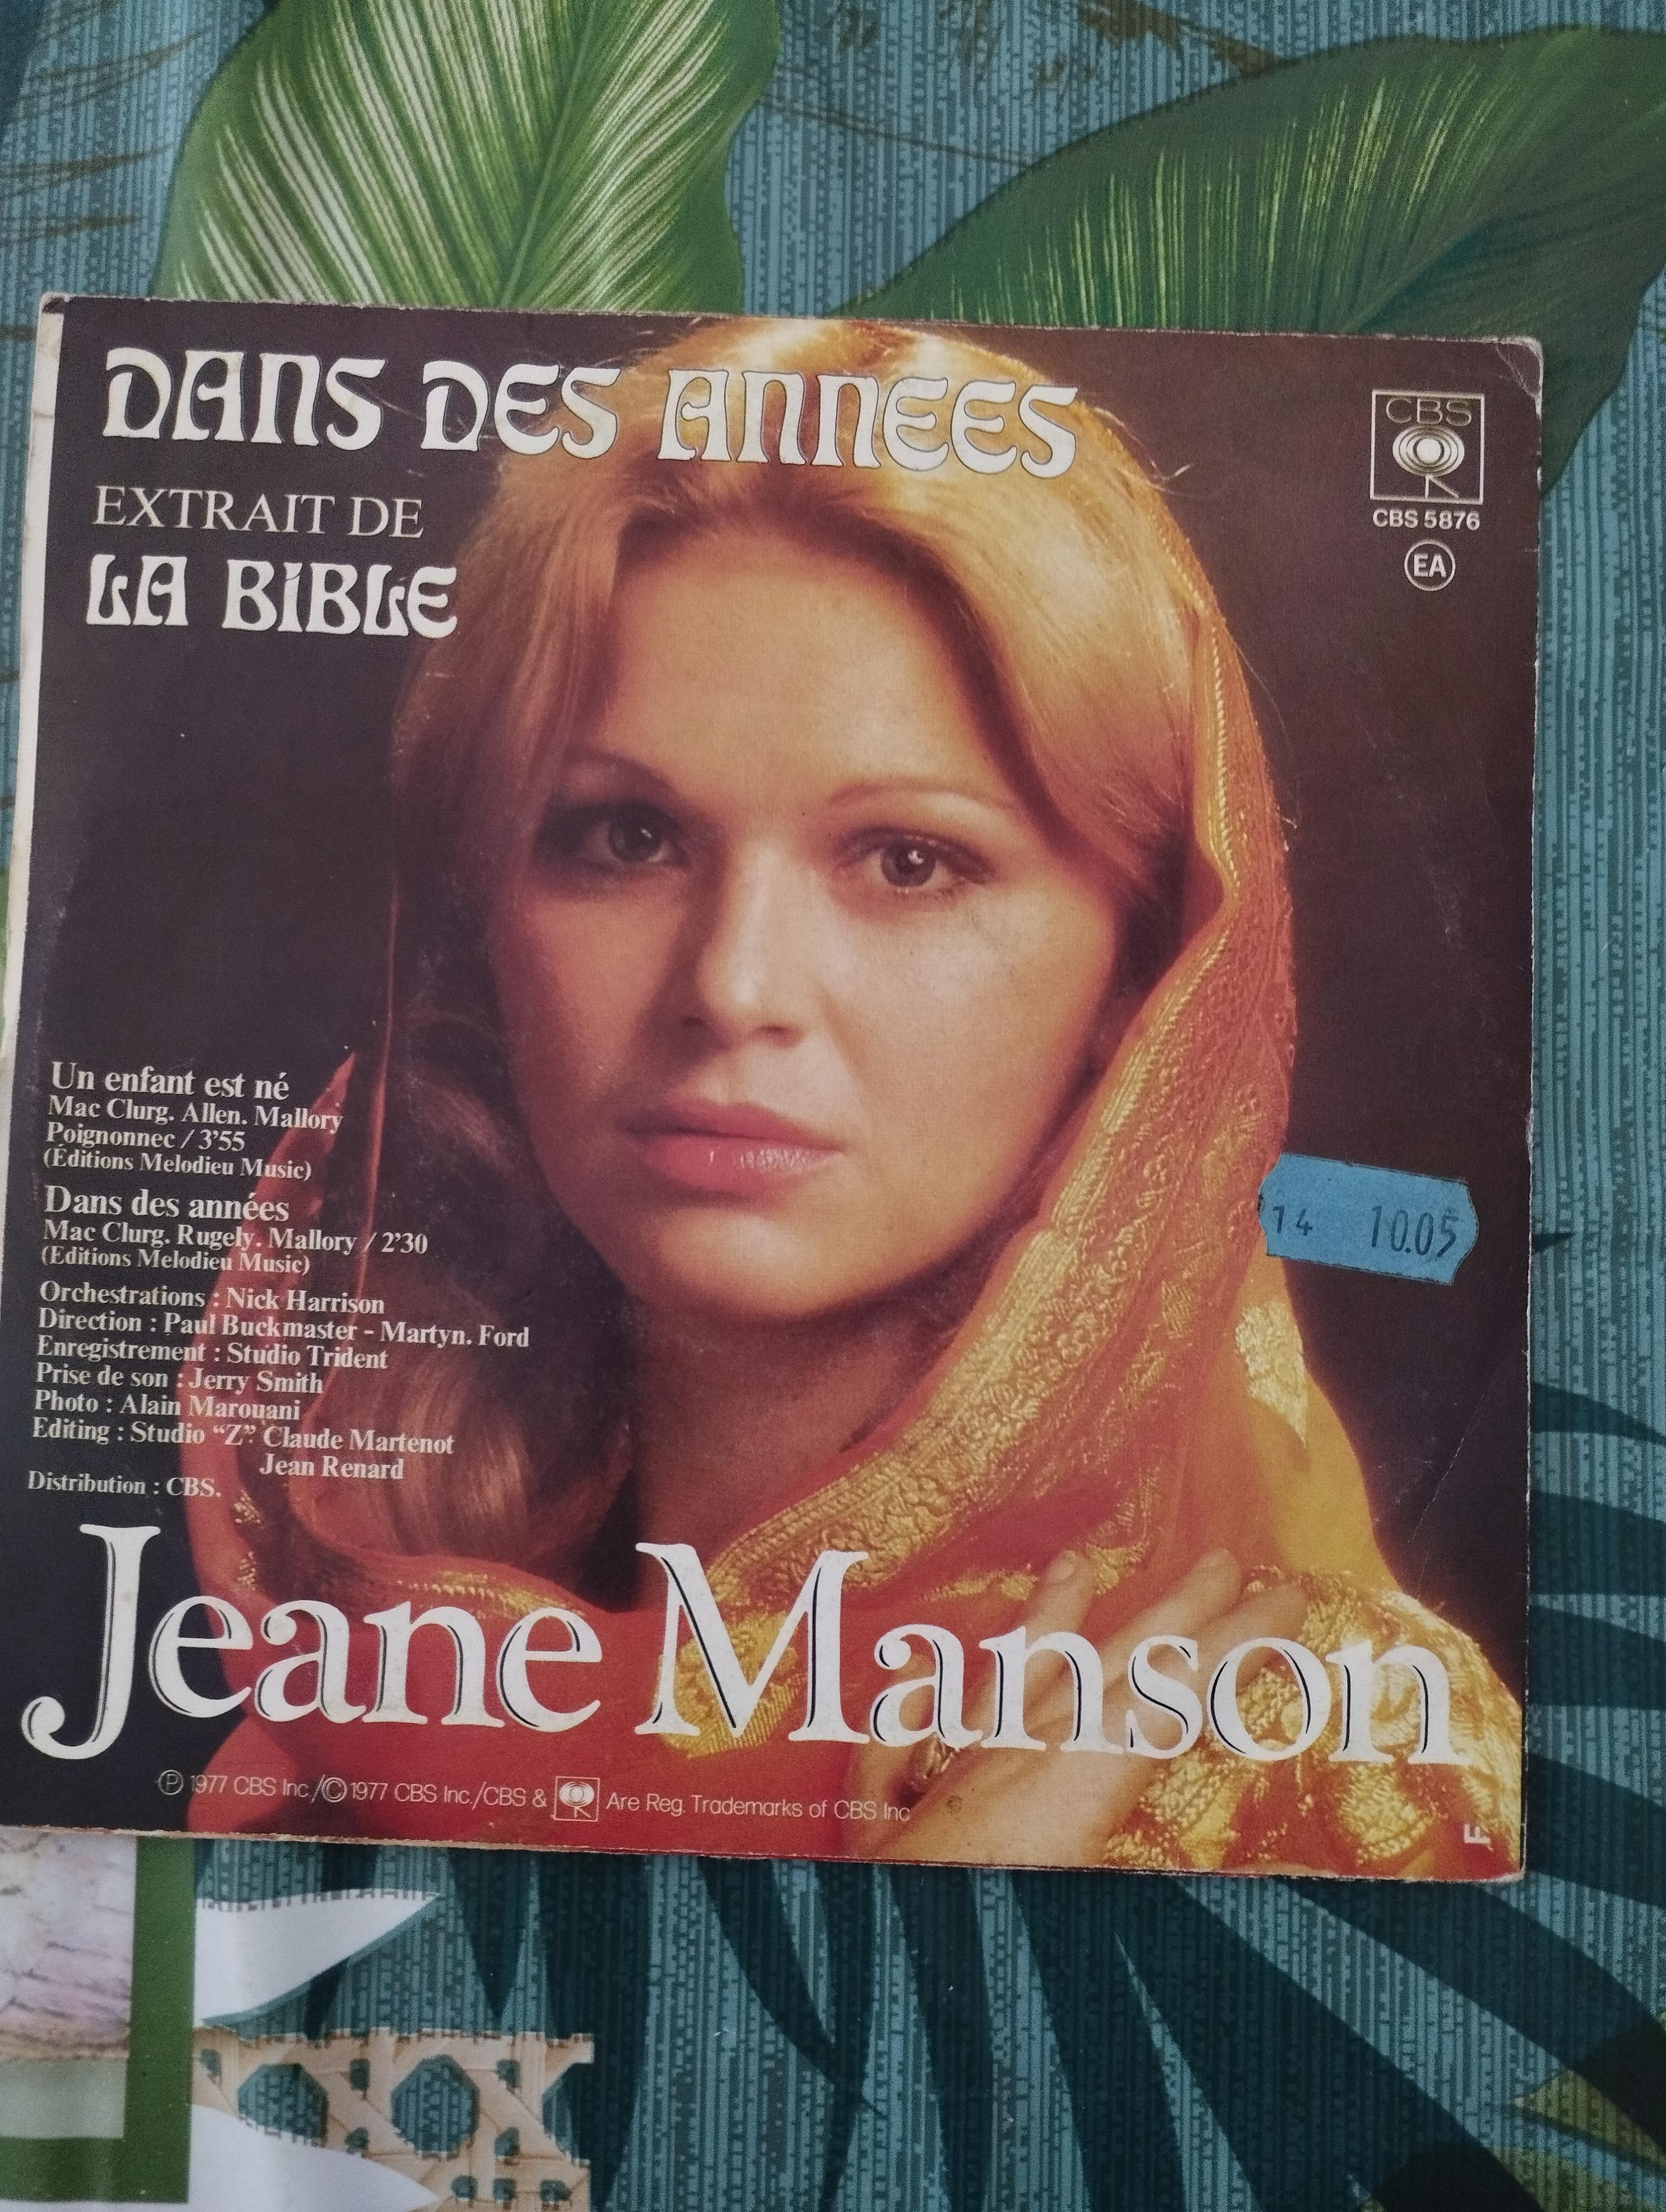 troc de troc disque vinyle 45t jeanne manson - un enfant est né image 1